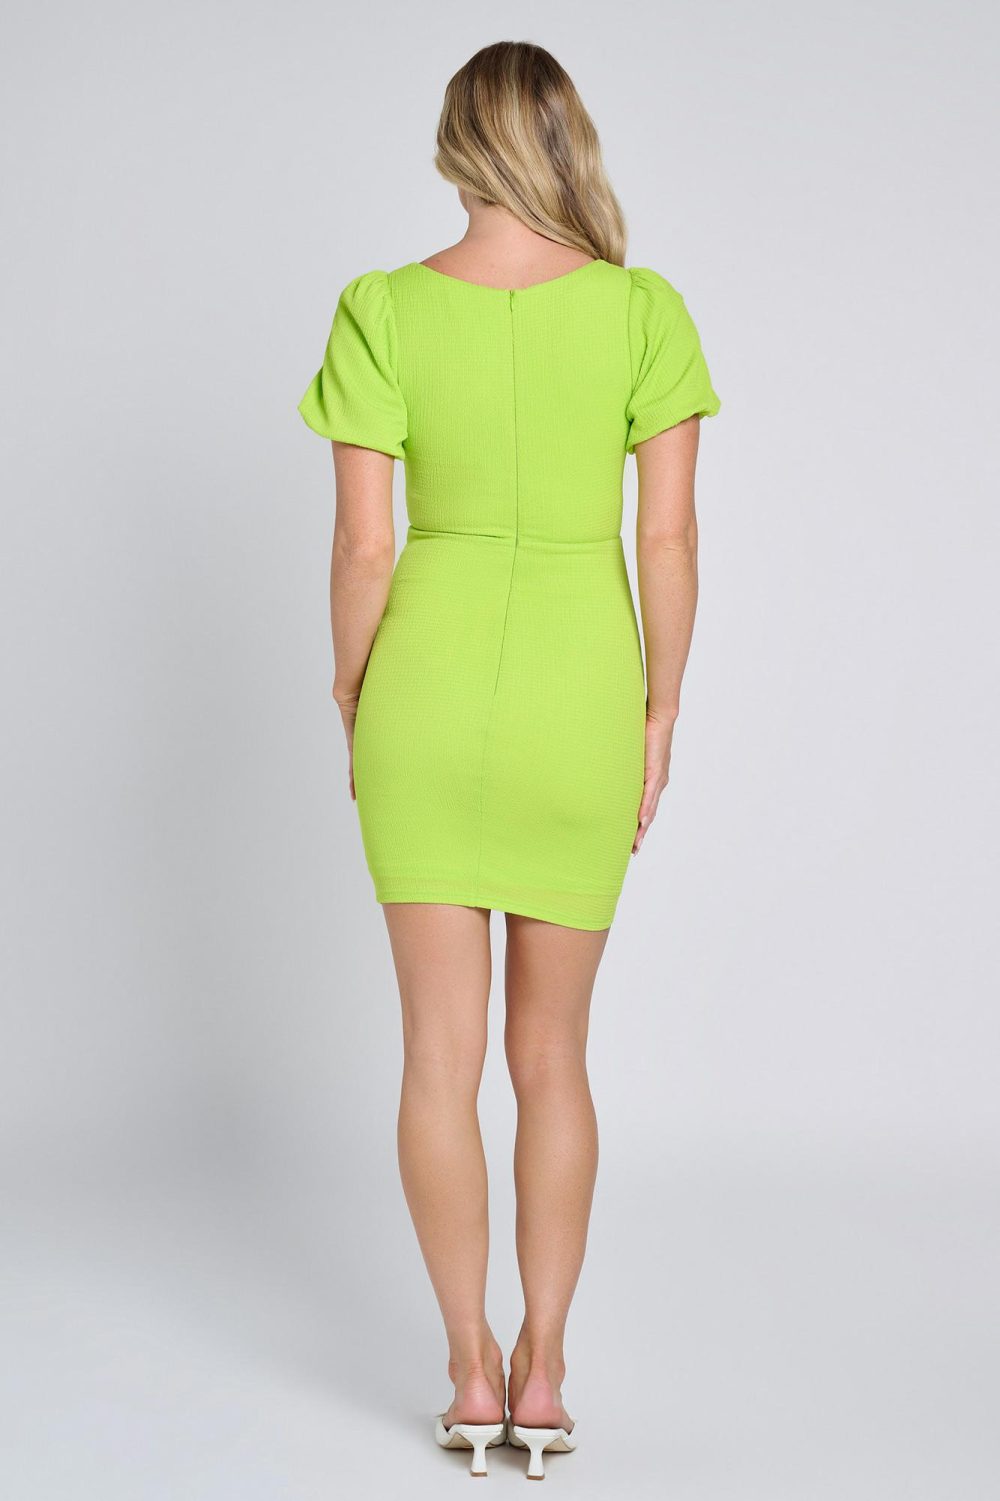 Ladies Dress Colour is Lime